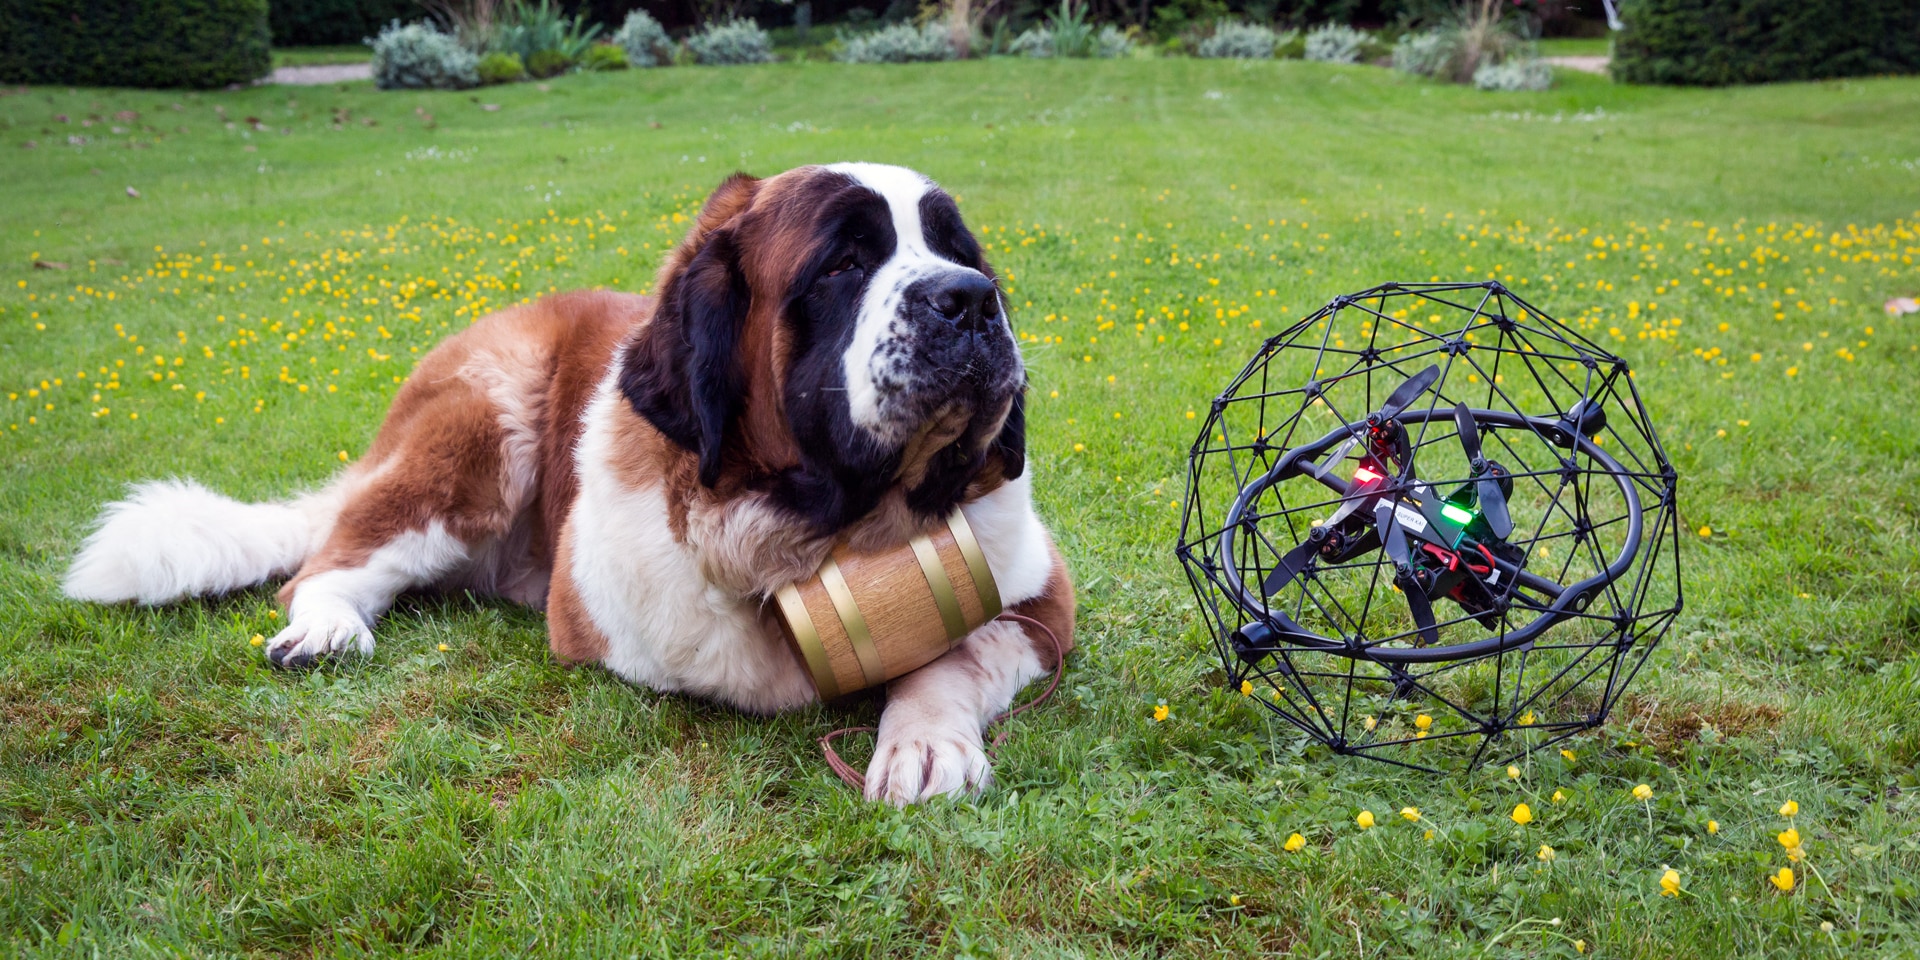  Ein Bernhardinerhund liegt auf einer Wiese liegt, daneben eine moderne Drohne.